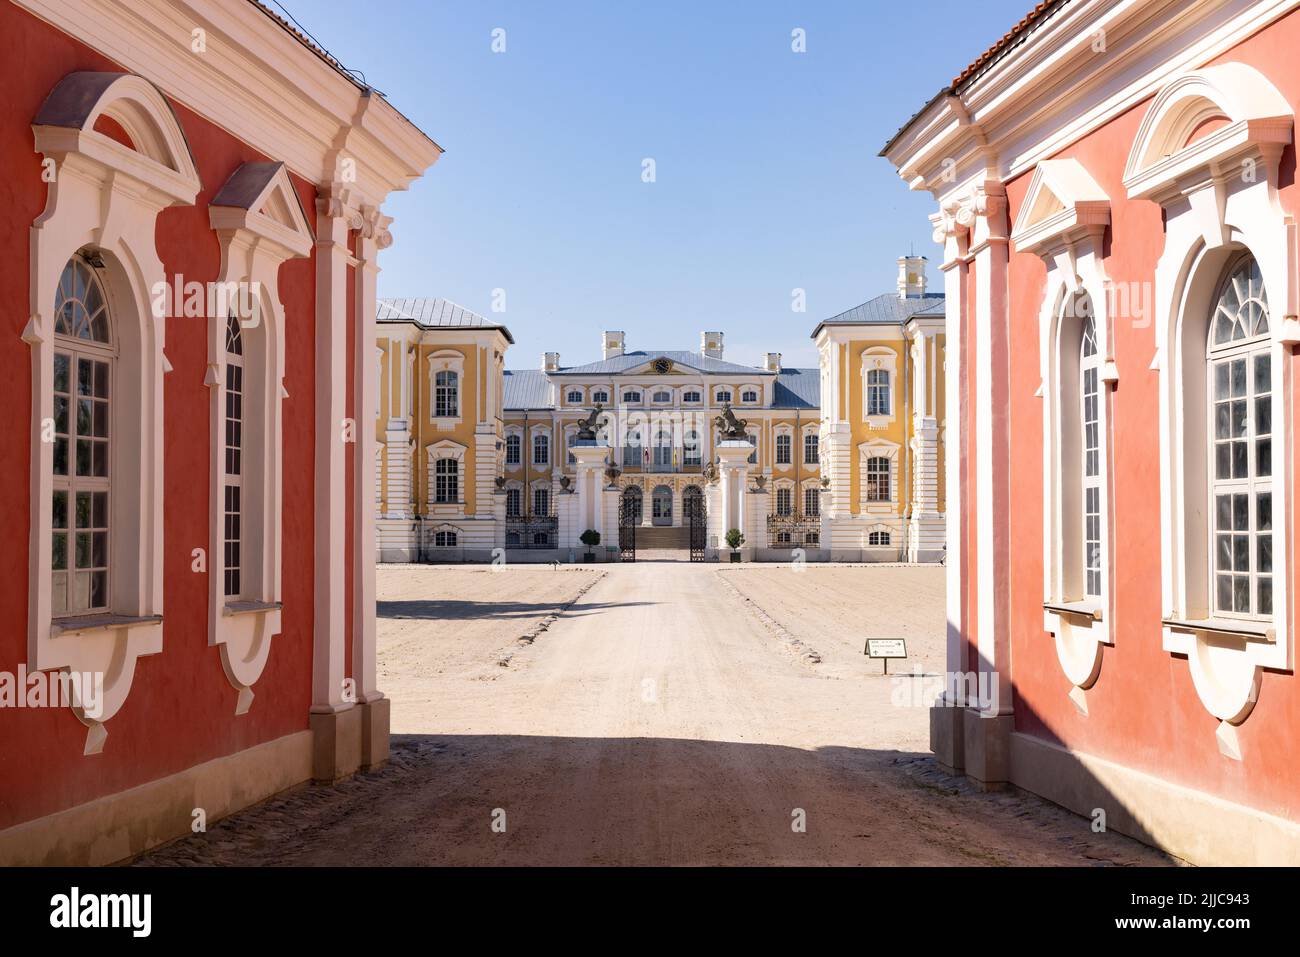 Palacio Rundale, Letonia; un palacio barroco del siglo 18th construido por Ernst Johann von Biron en la década de 1700s, ahora un museo y jardín, Letonia, Europa Foto de stock